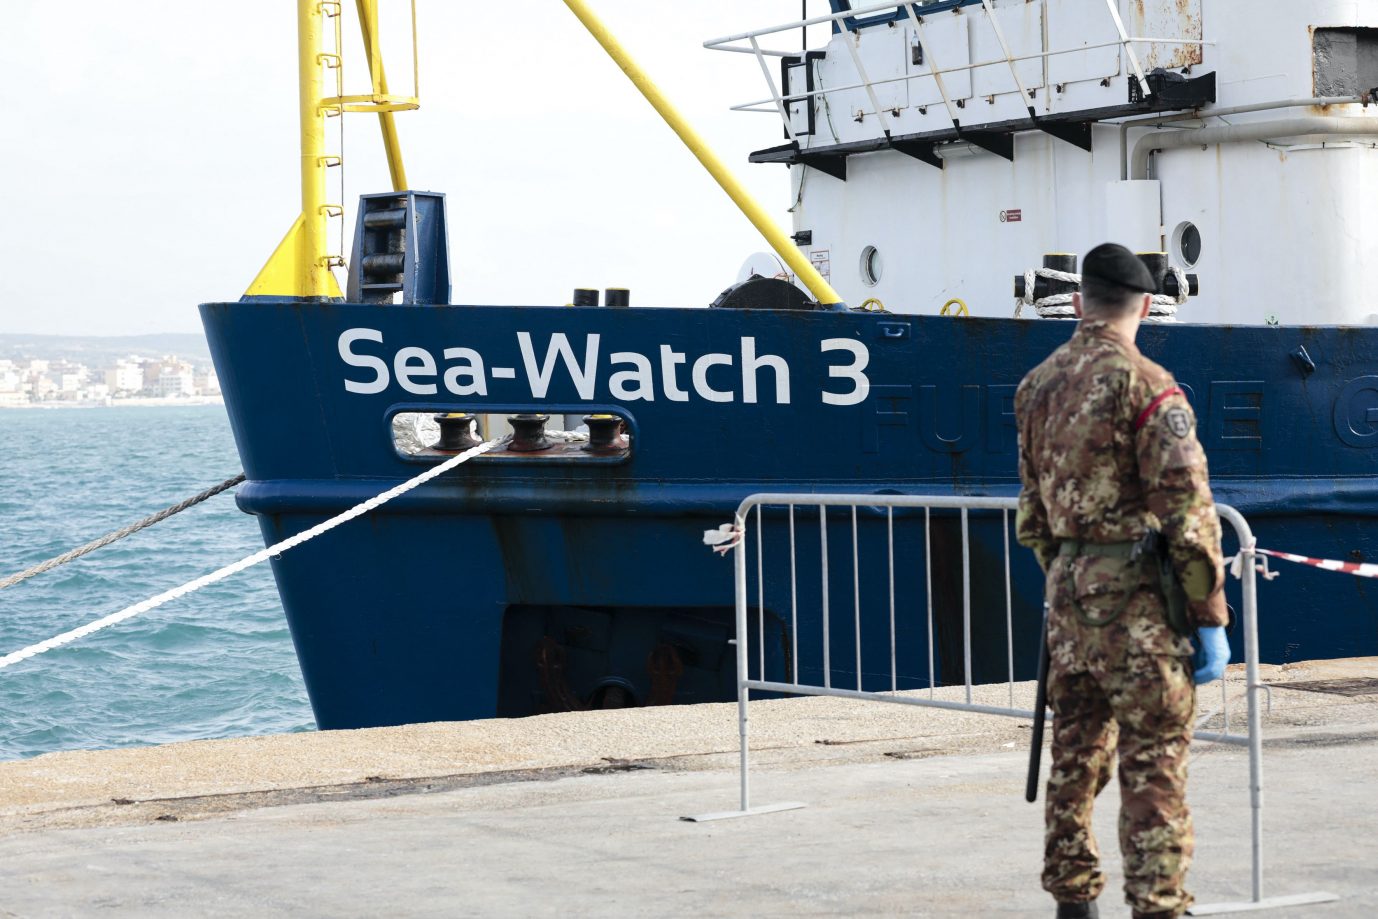 EuGH-Generalanwalt Athanasios Rantos denkt, daß die Schiffe der Migrantenhilfsorganisation Sea-Watch zurecht von Italien festgesetzt worden sind Foto: picture alliance / abaca | IPA/ABACA